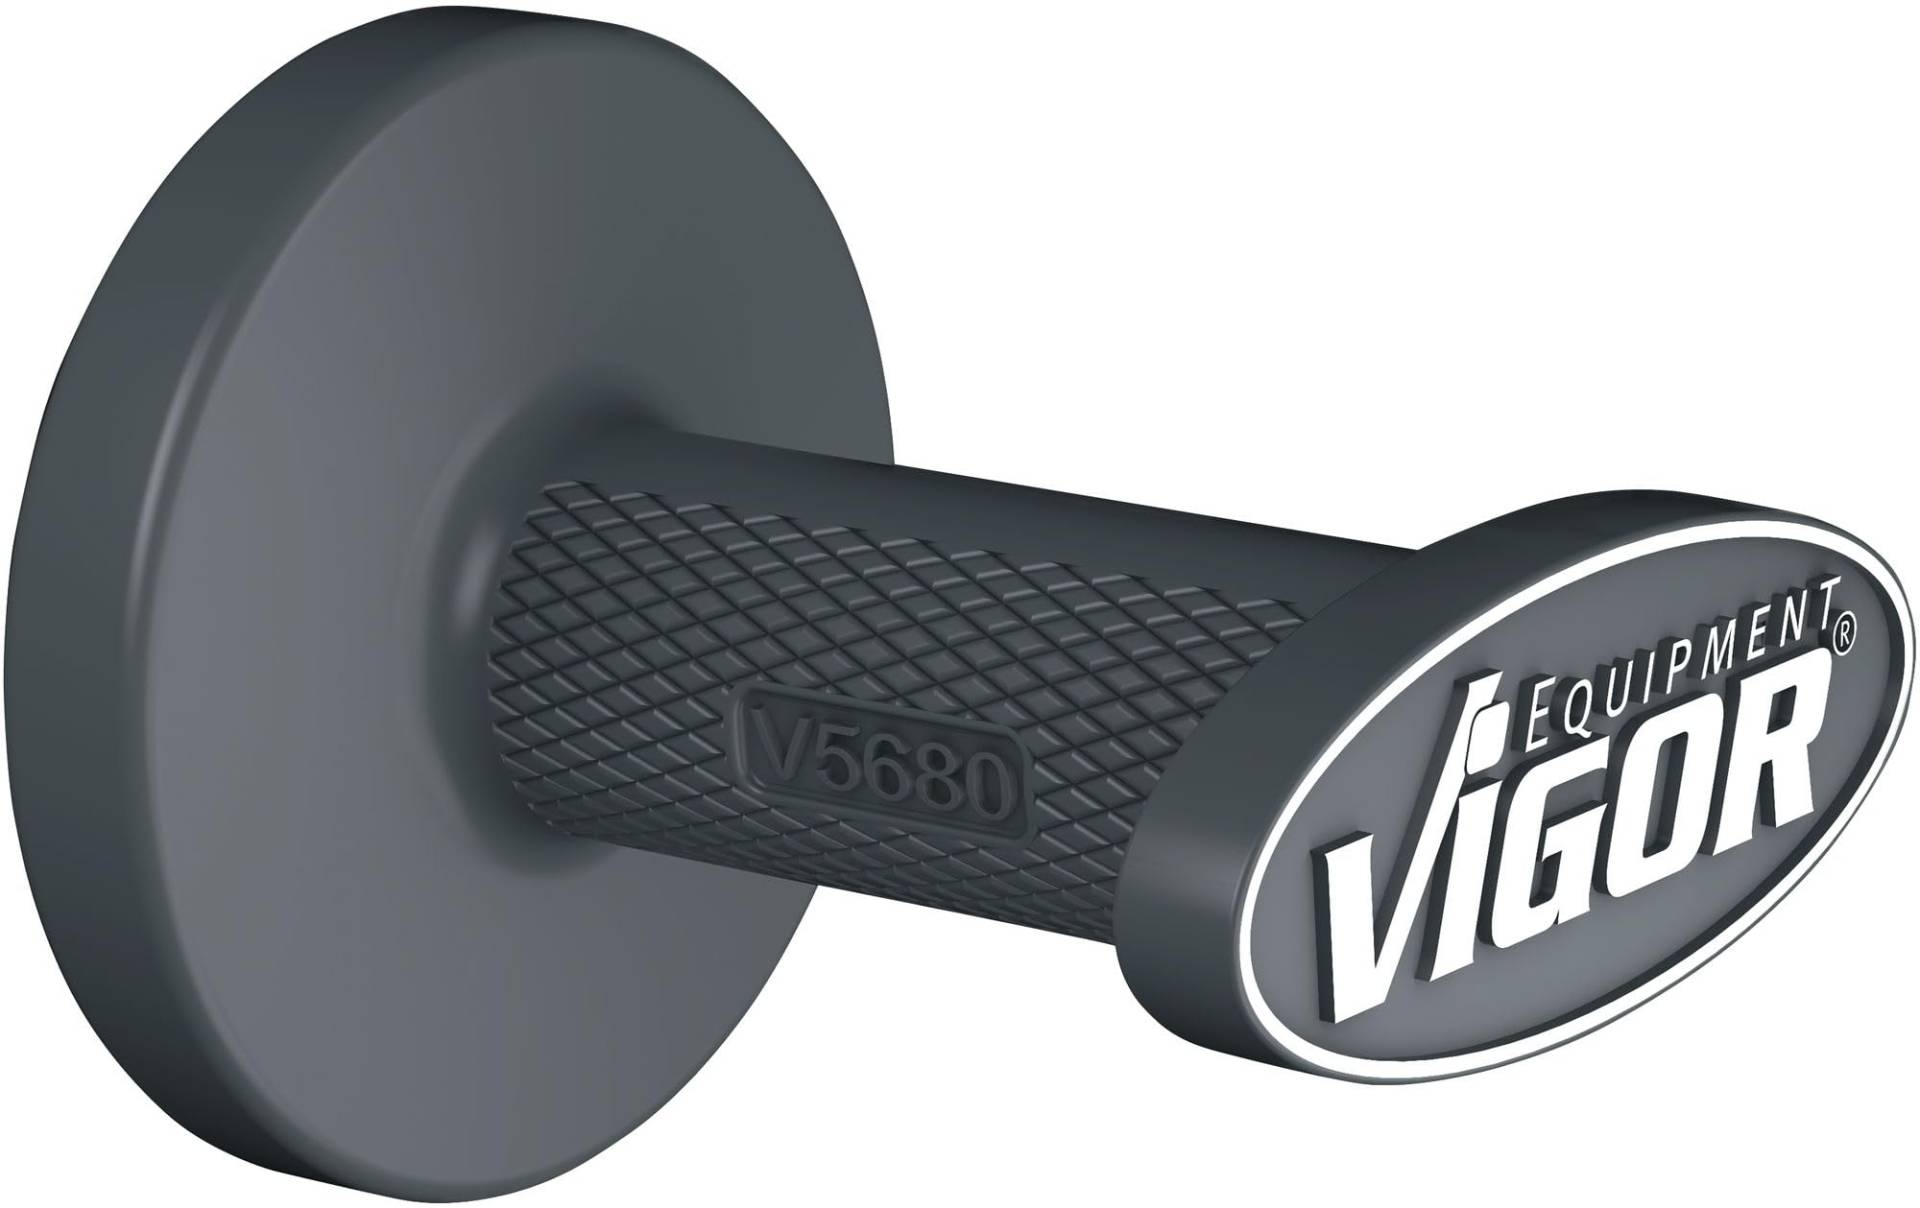 ViGOR Magnethalter V5680, universelles Befestigen von Gegenständen, gummierter Magnet zum Schonen der Oberfläche, Haltekraft 18 kg, ideal für Druckluftschläuche und Werkzeuge von Vigor